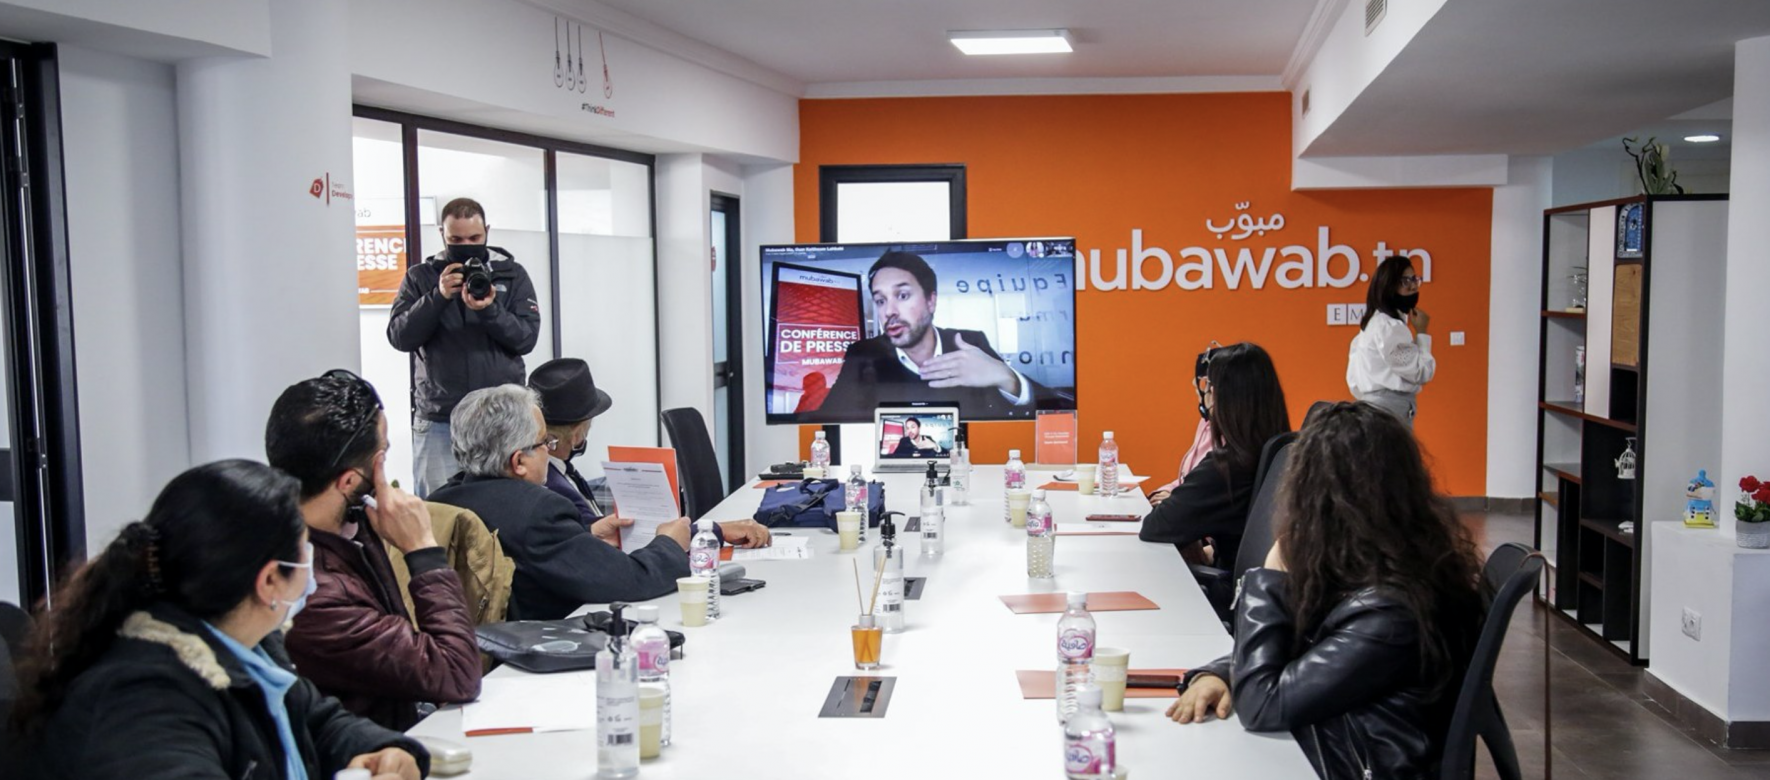 Maroc : L’acteur immobilier Mubawab va investir 10 millions de dollars pour accélérer son expansion au Maghreb